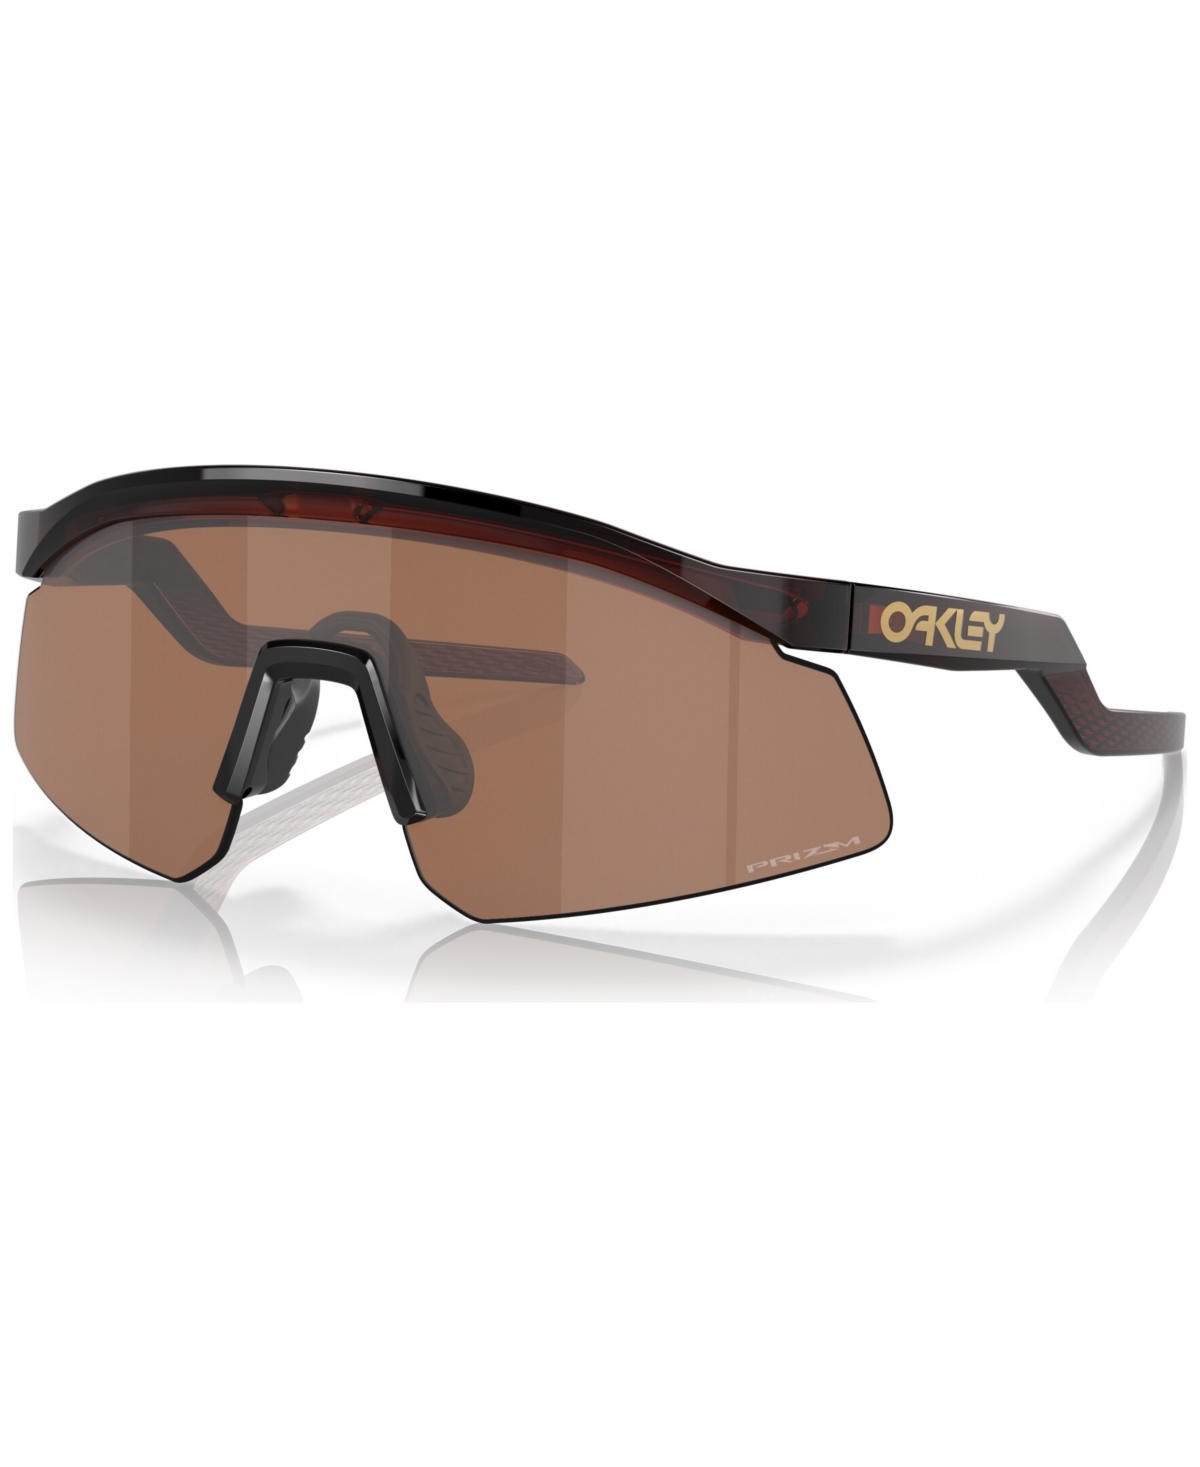 Men's Sunglasses, OO9229-0237 - Rootbeer